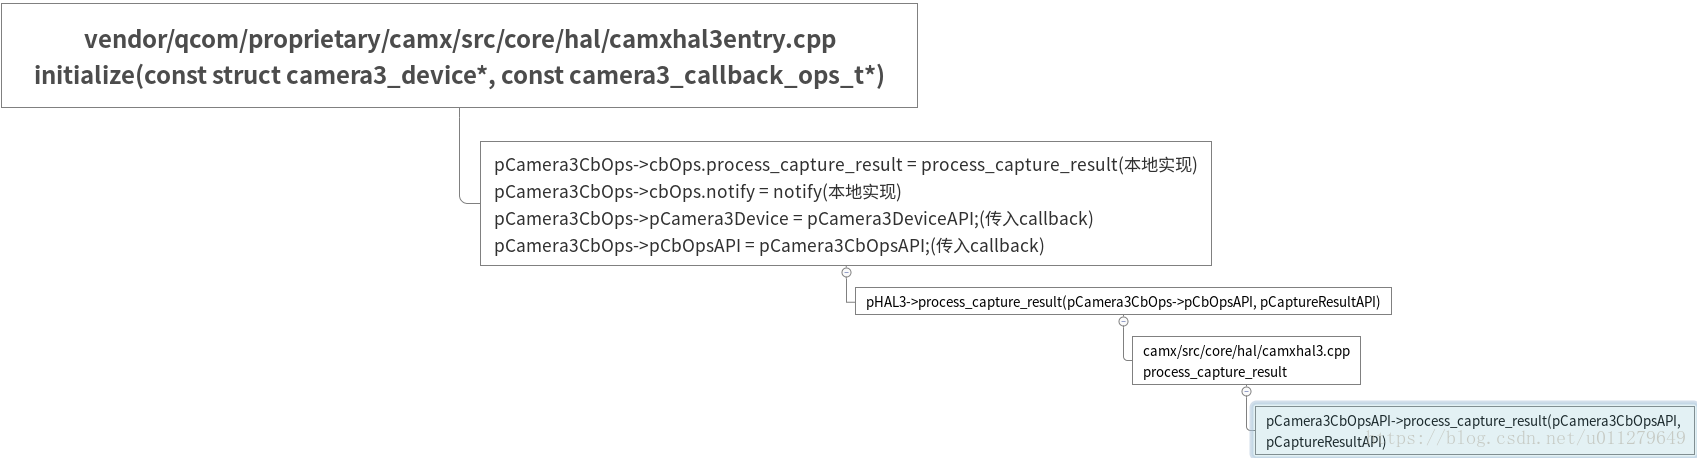 Android Camera Metadataimage从hal到frameworkonresultavailable Csdn博客 1471